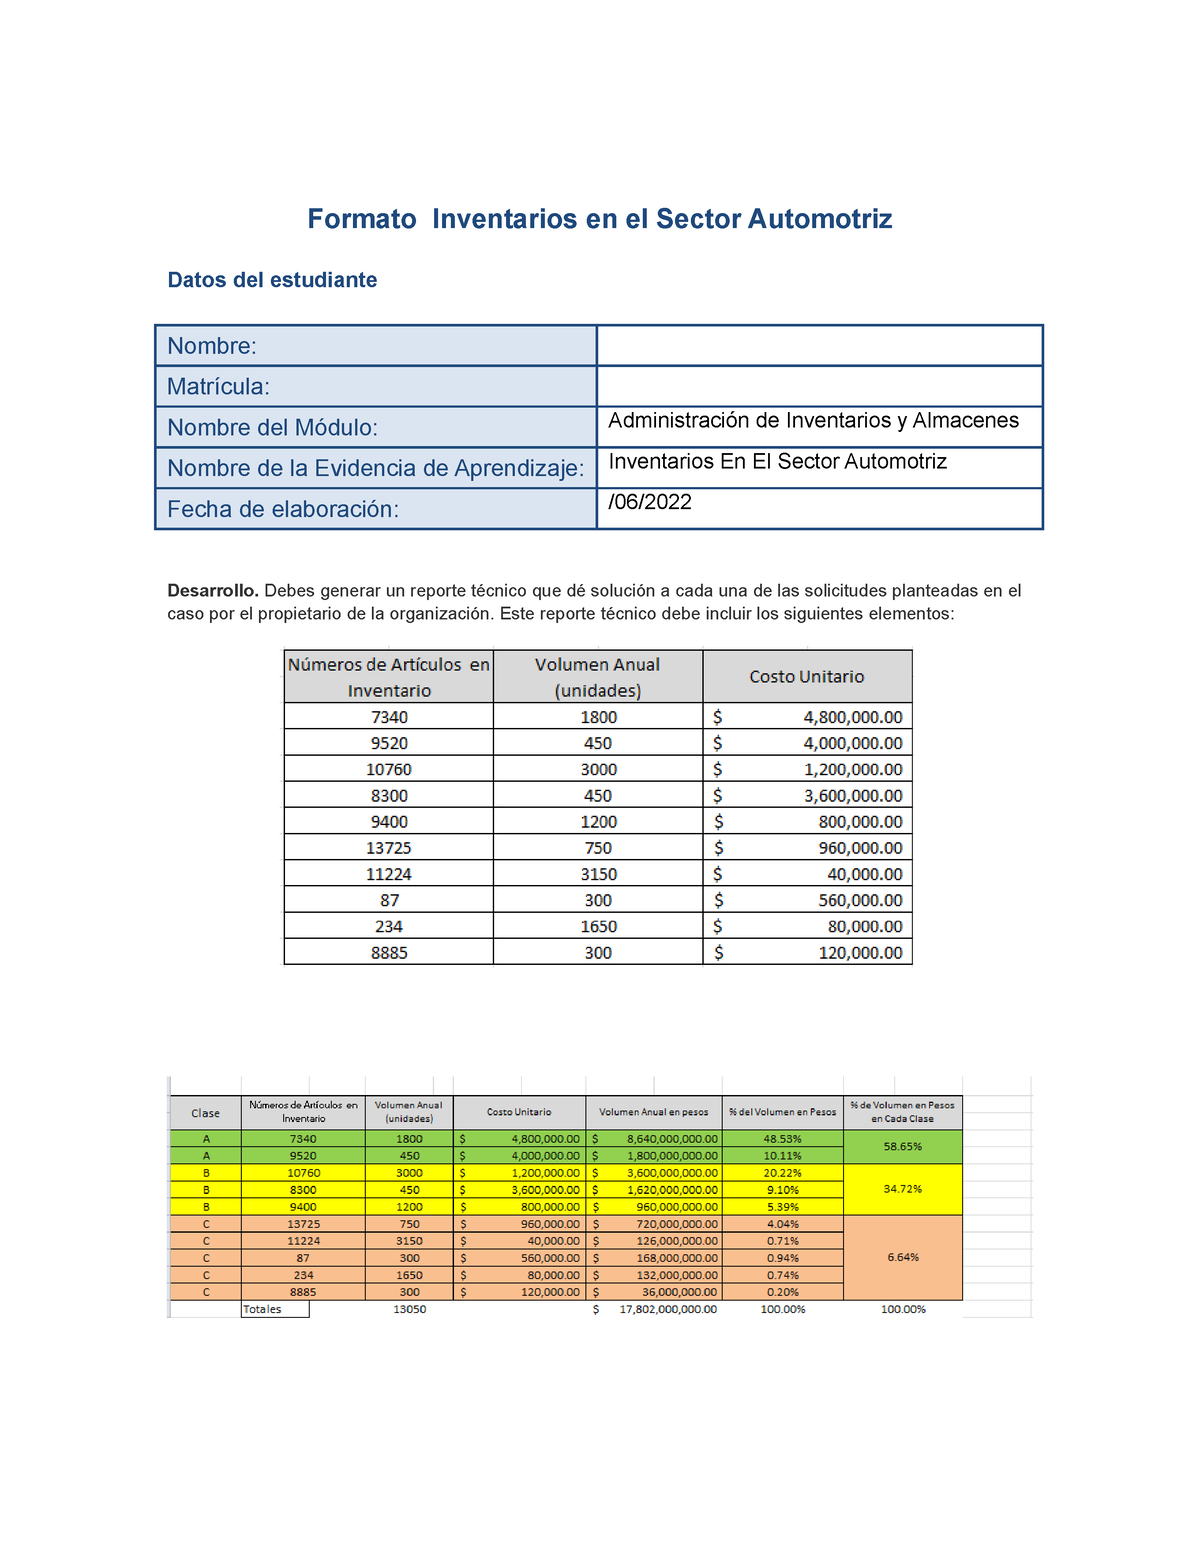 Inventario En El Sector Automotriz Ea 2 Formato Inventarios En El Sector Automotriz Datos Del 7289